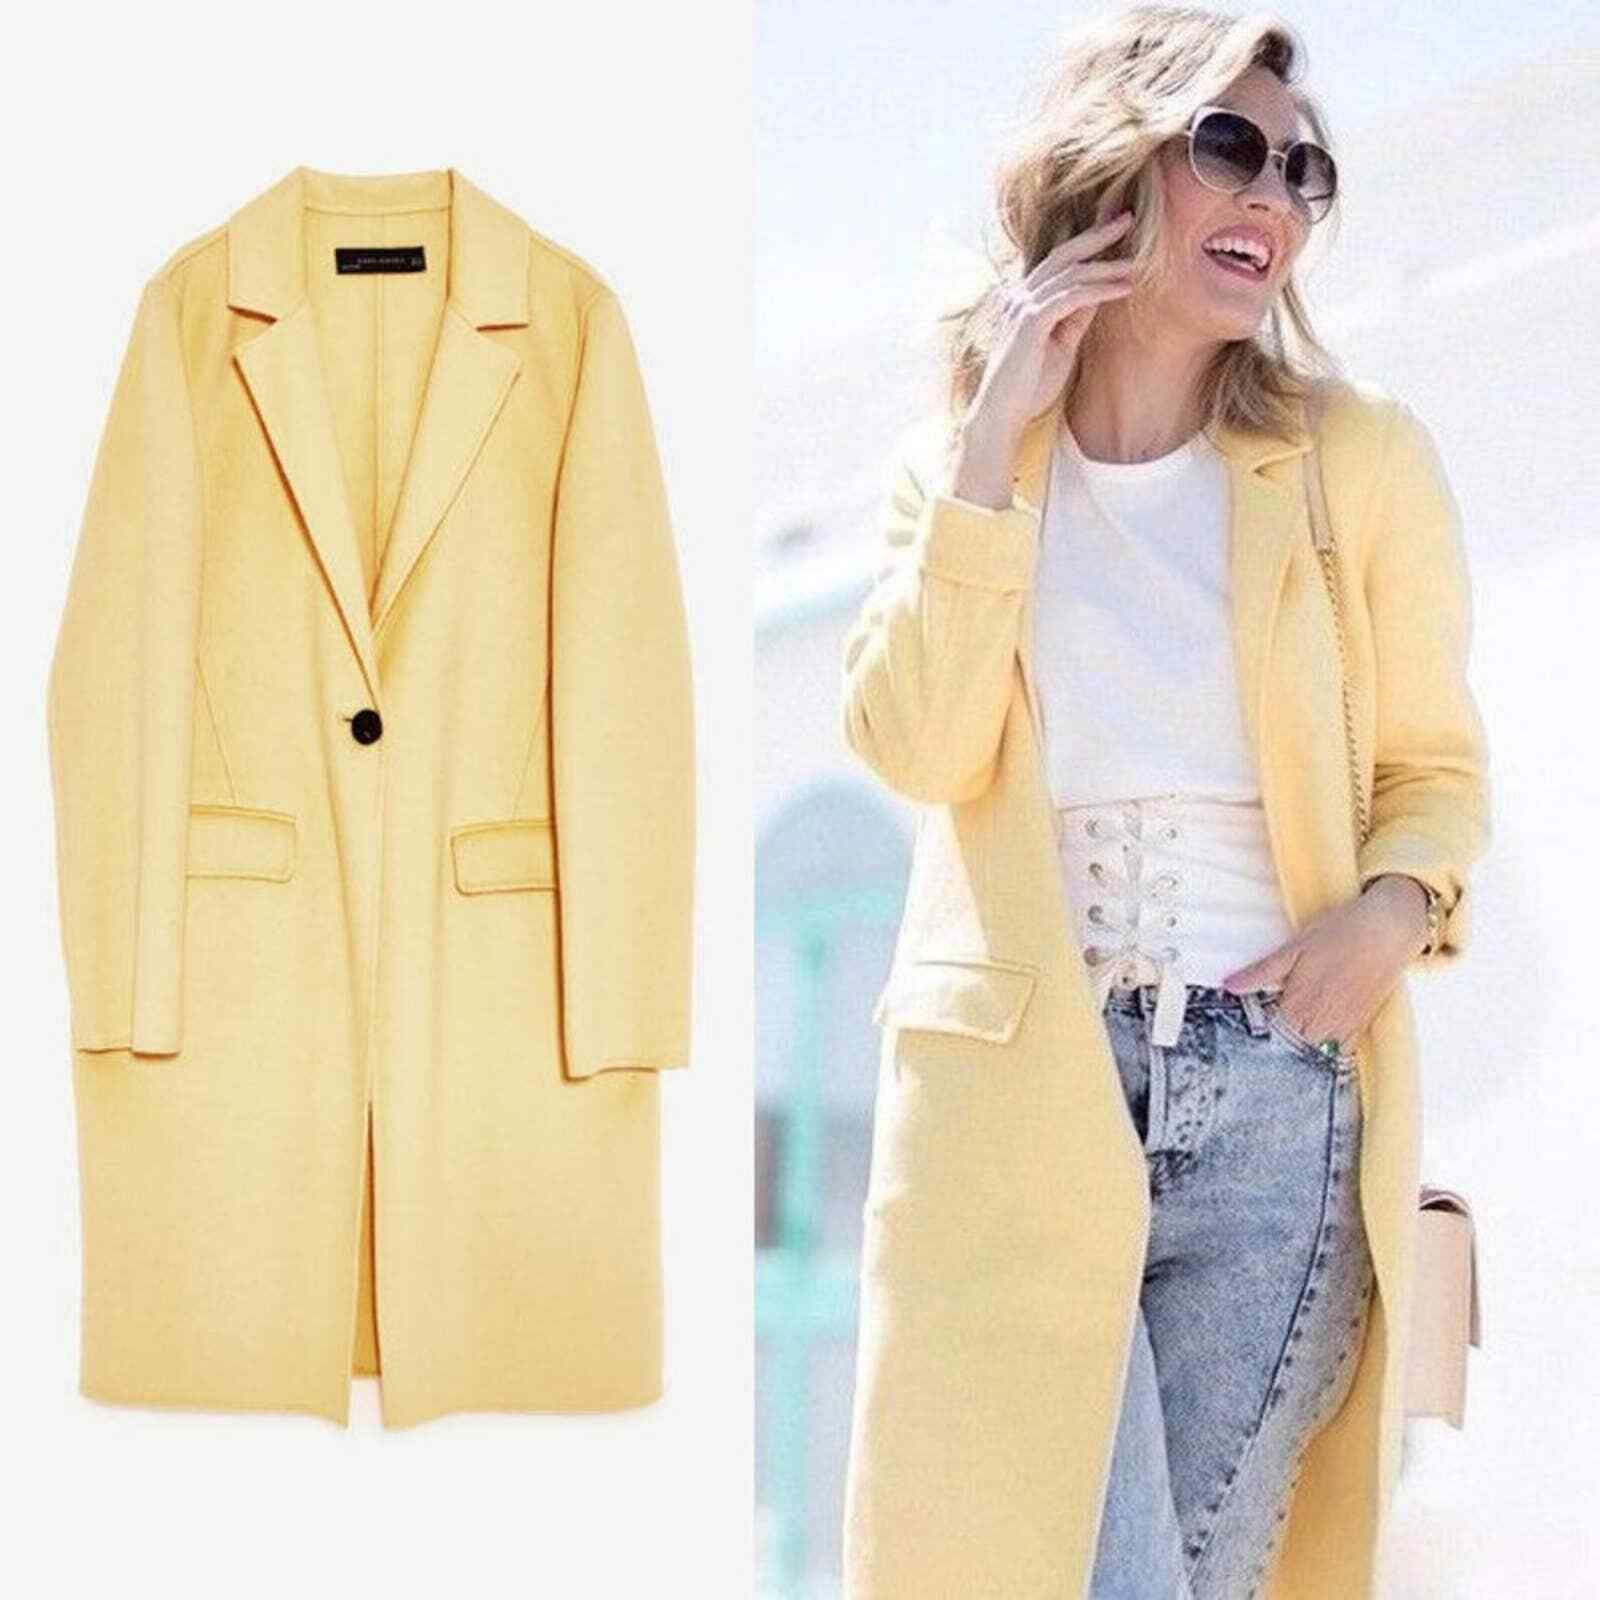 Zara Wool Blend Long Coat in Pale Yellow Size X-Small - NWT  | eBay | eBay US